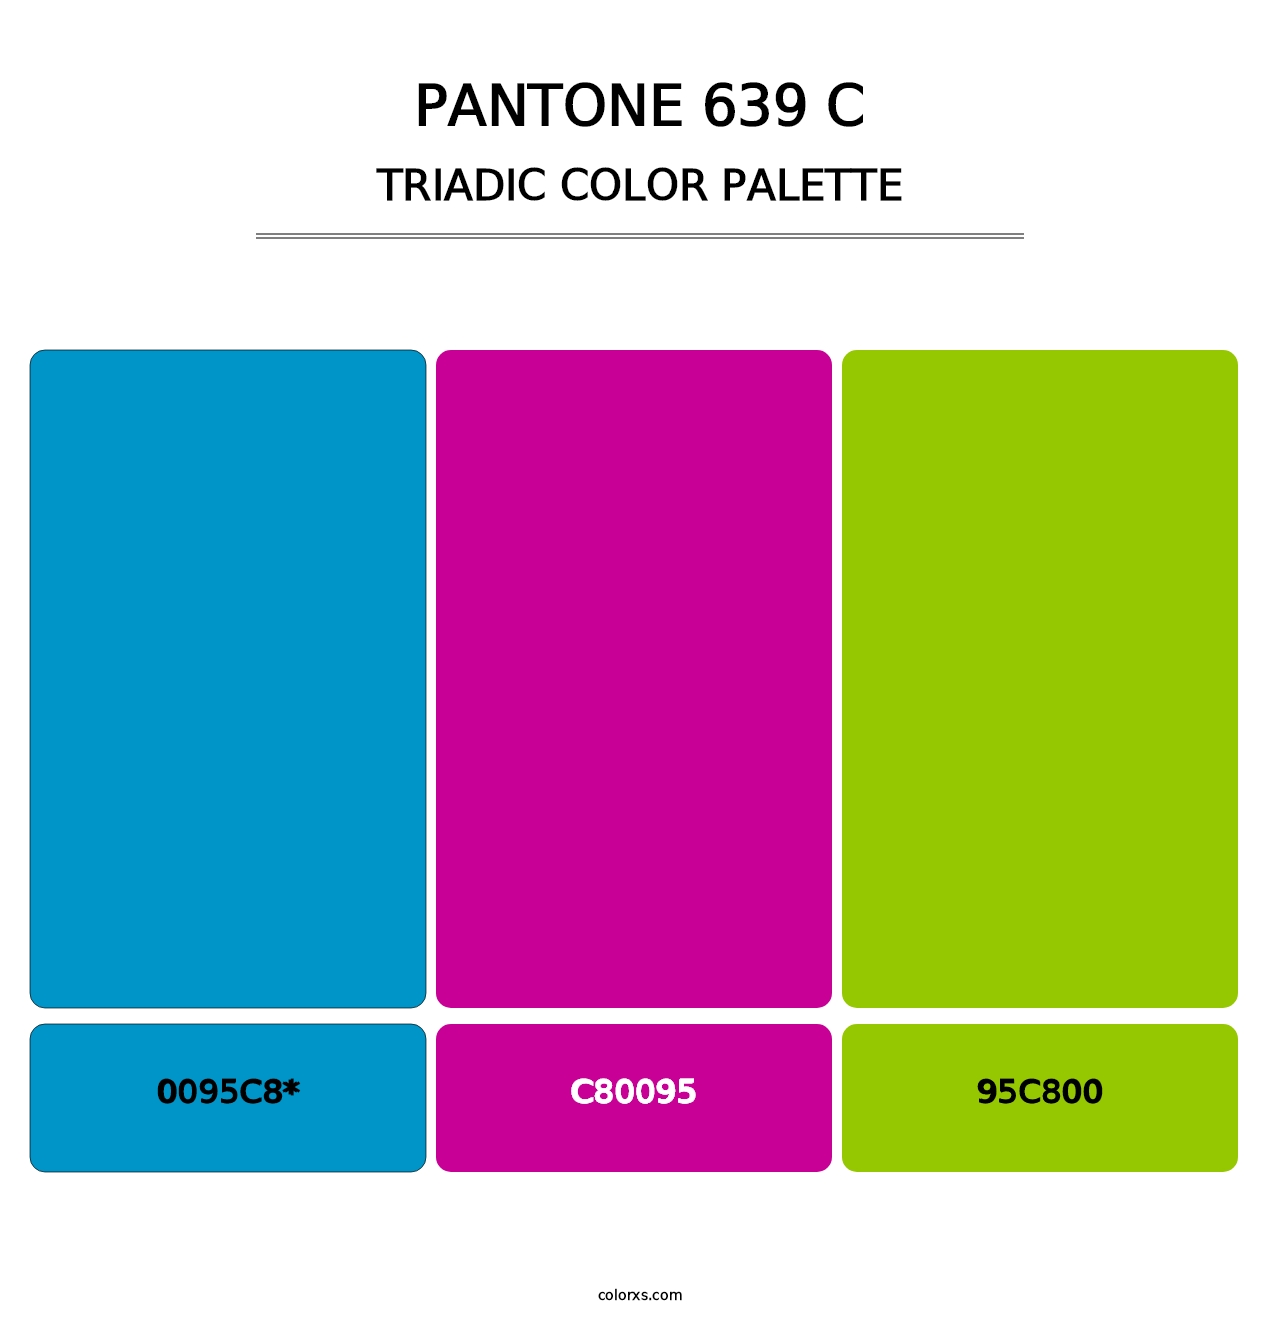 PANTONE 639 C - Triadic Color Palette